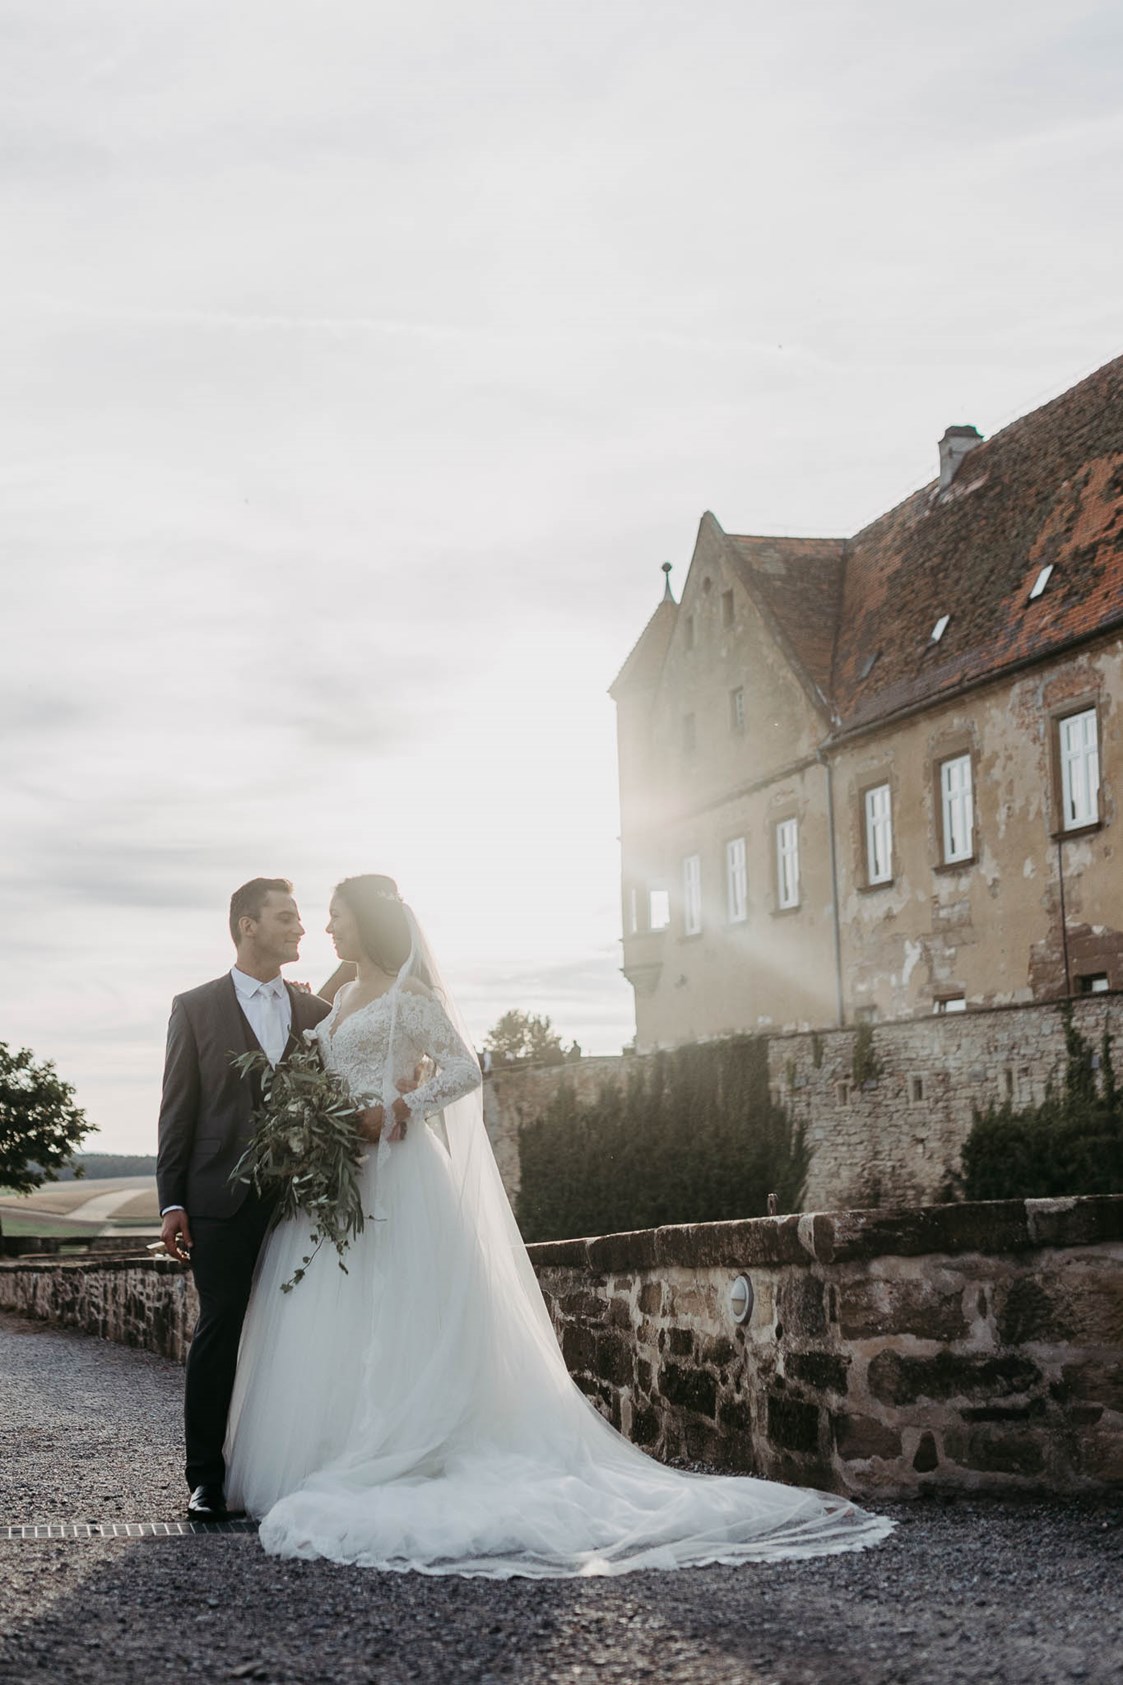 Hochzeit: Die Burg Stettenfels bietet zahlreiche tolle Spots für herrliche Brautpaar-Fotos. - Burg Stettenfels